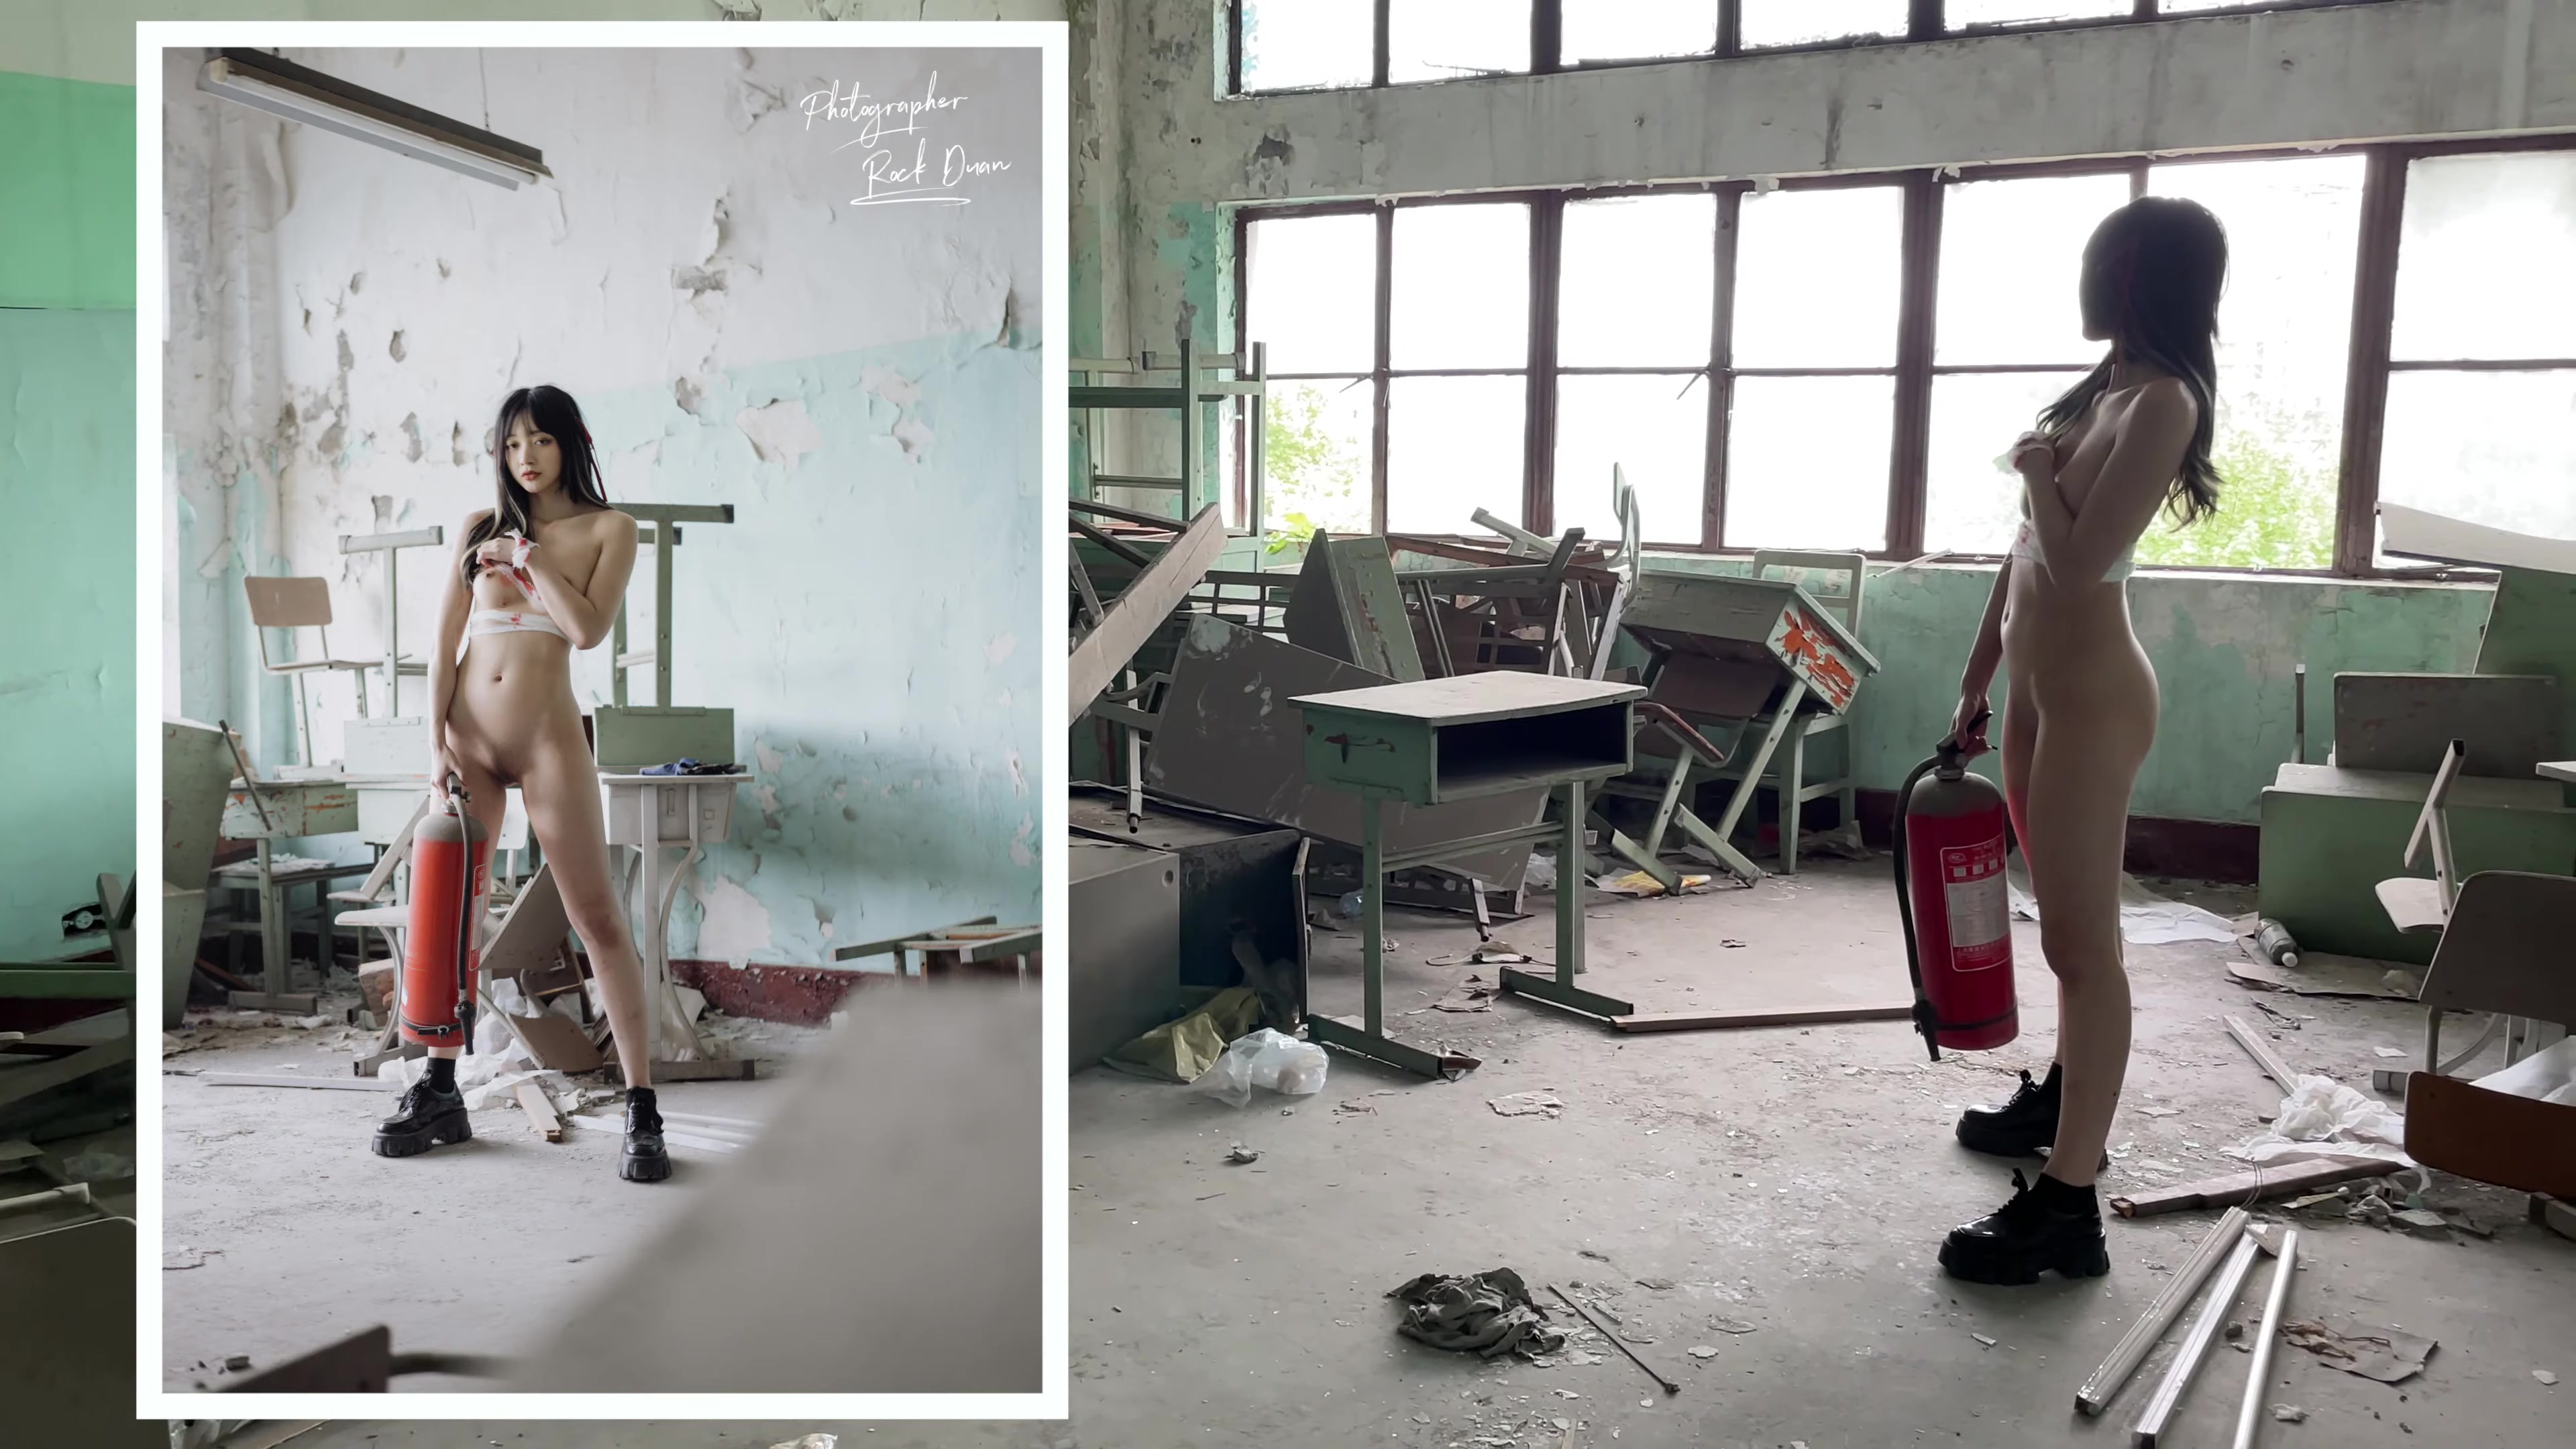 【網路收集系列】人體藝術攝影師Rock 廢棄學校人體攝影花絮【123P】 - 貼圖 - 絲襪美腿 -